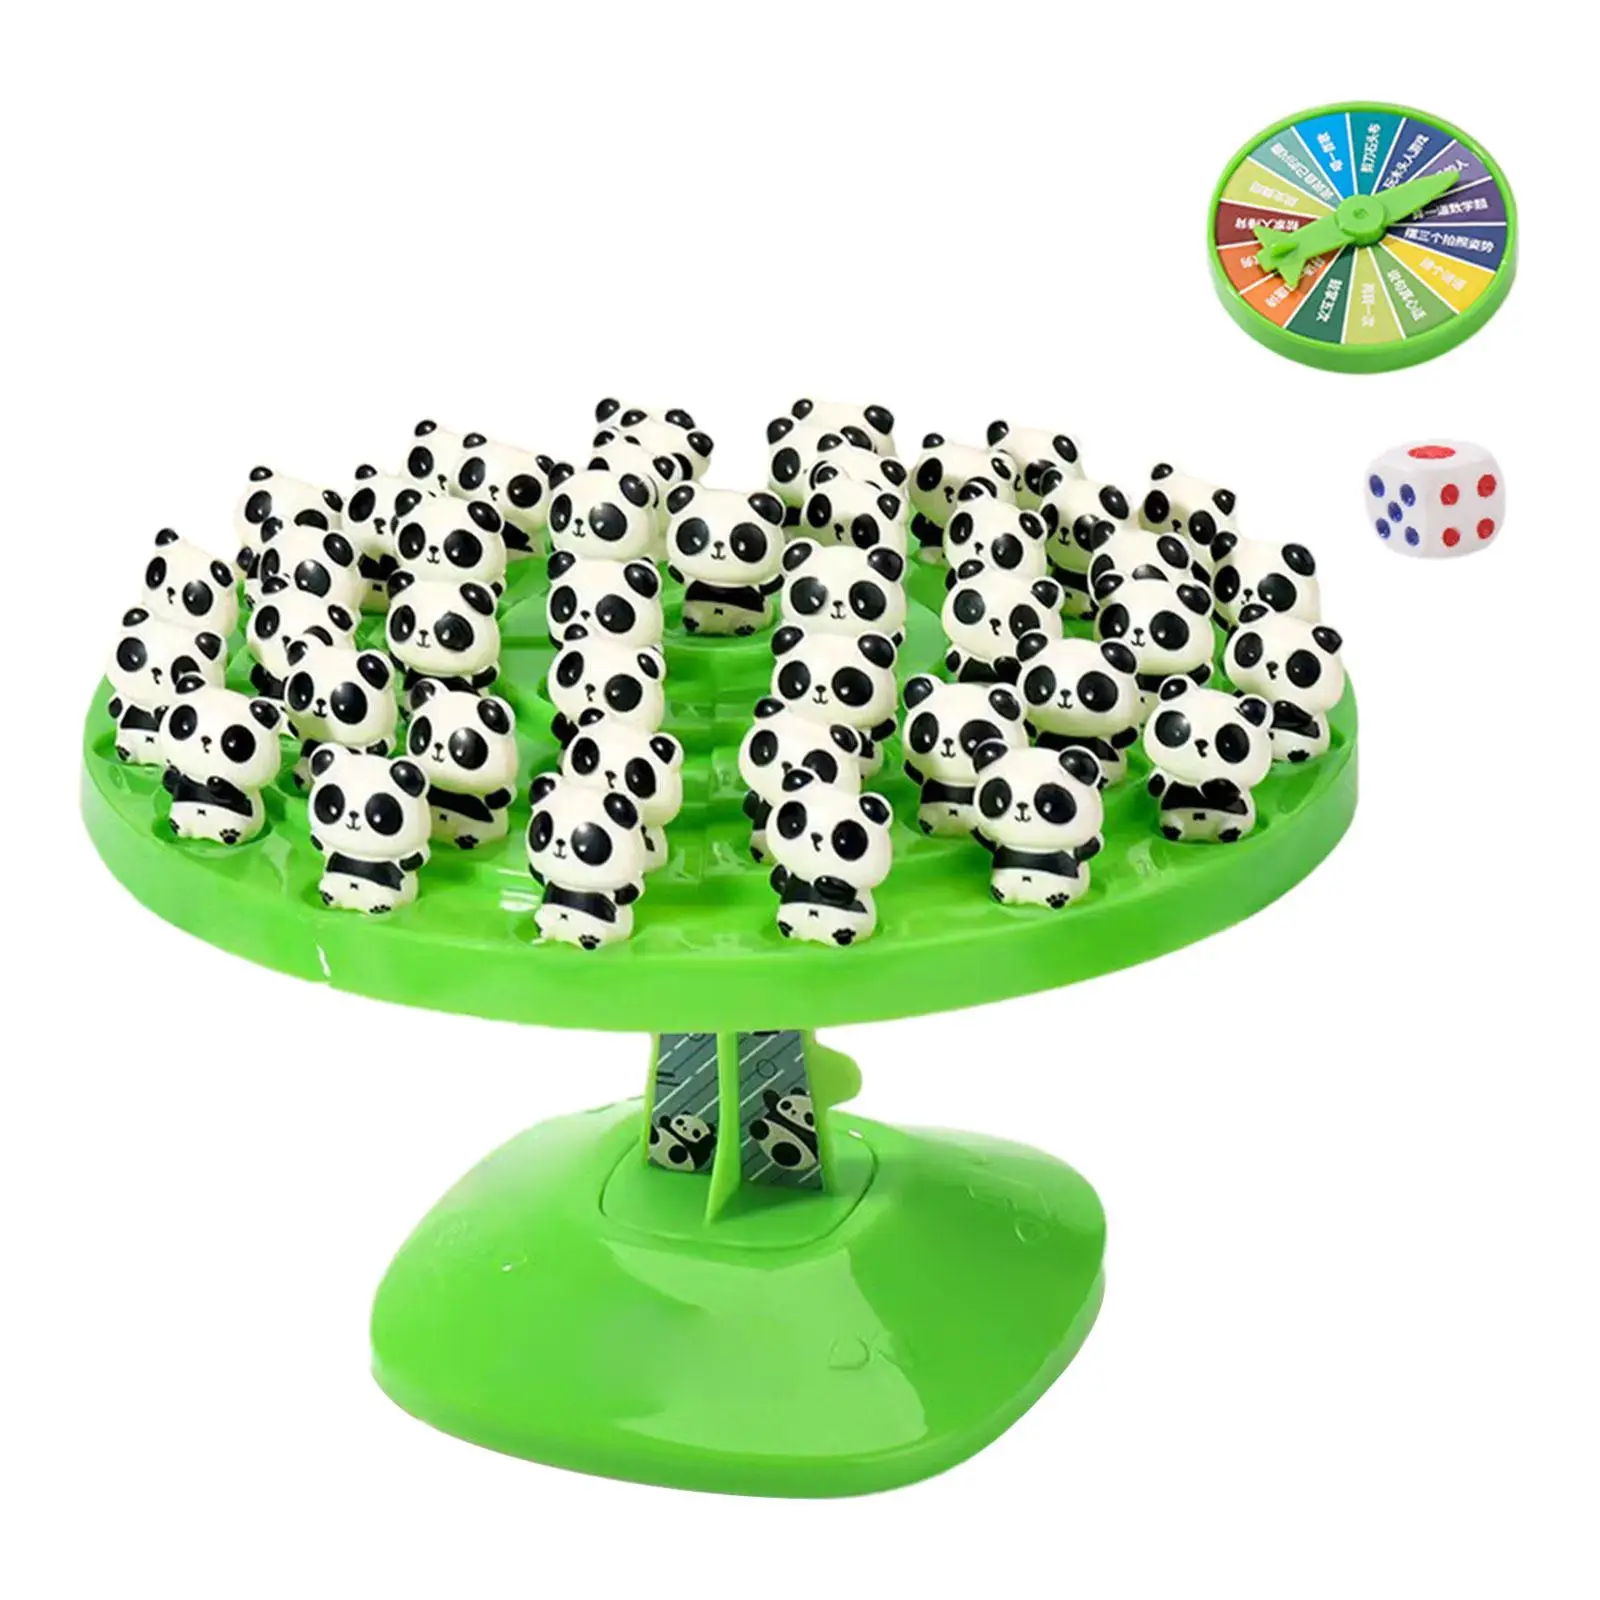 

Настольная балансировочная игрушка-панда, Интерактивная координация глаз у родителей и детей